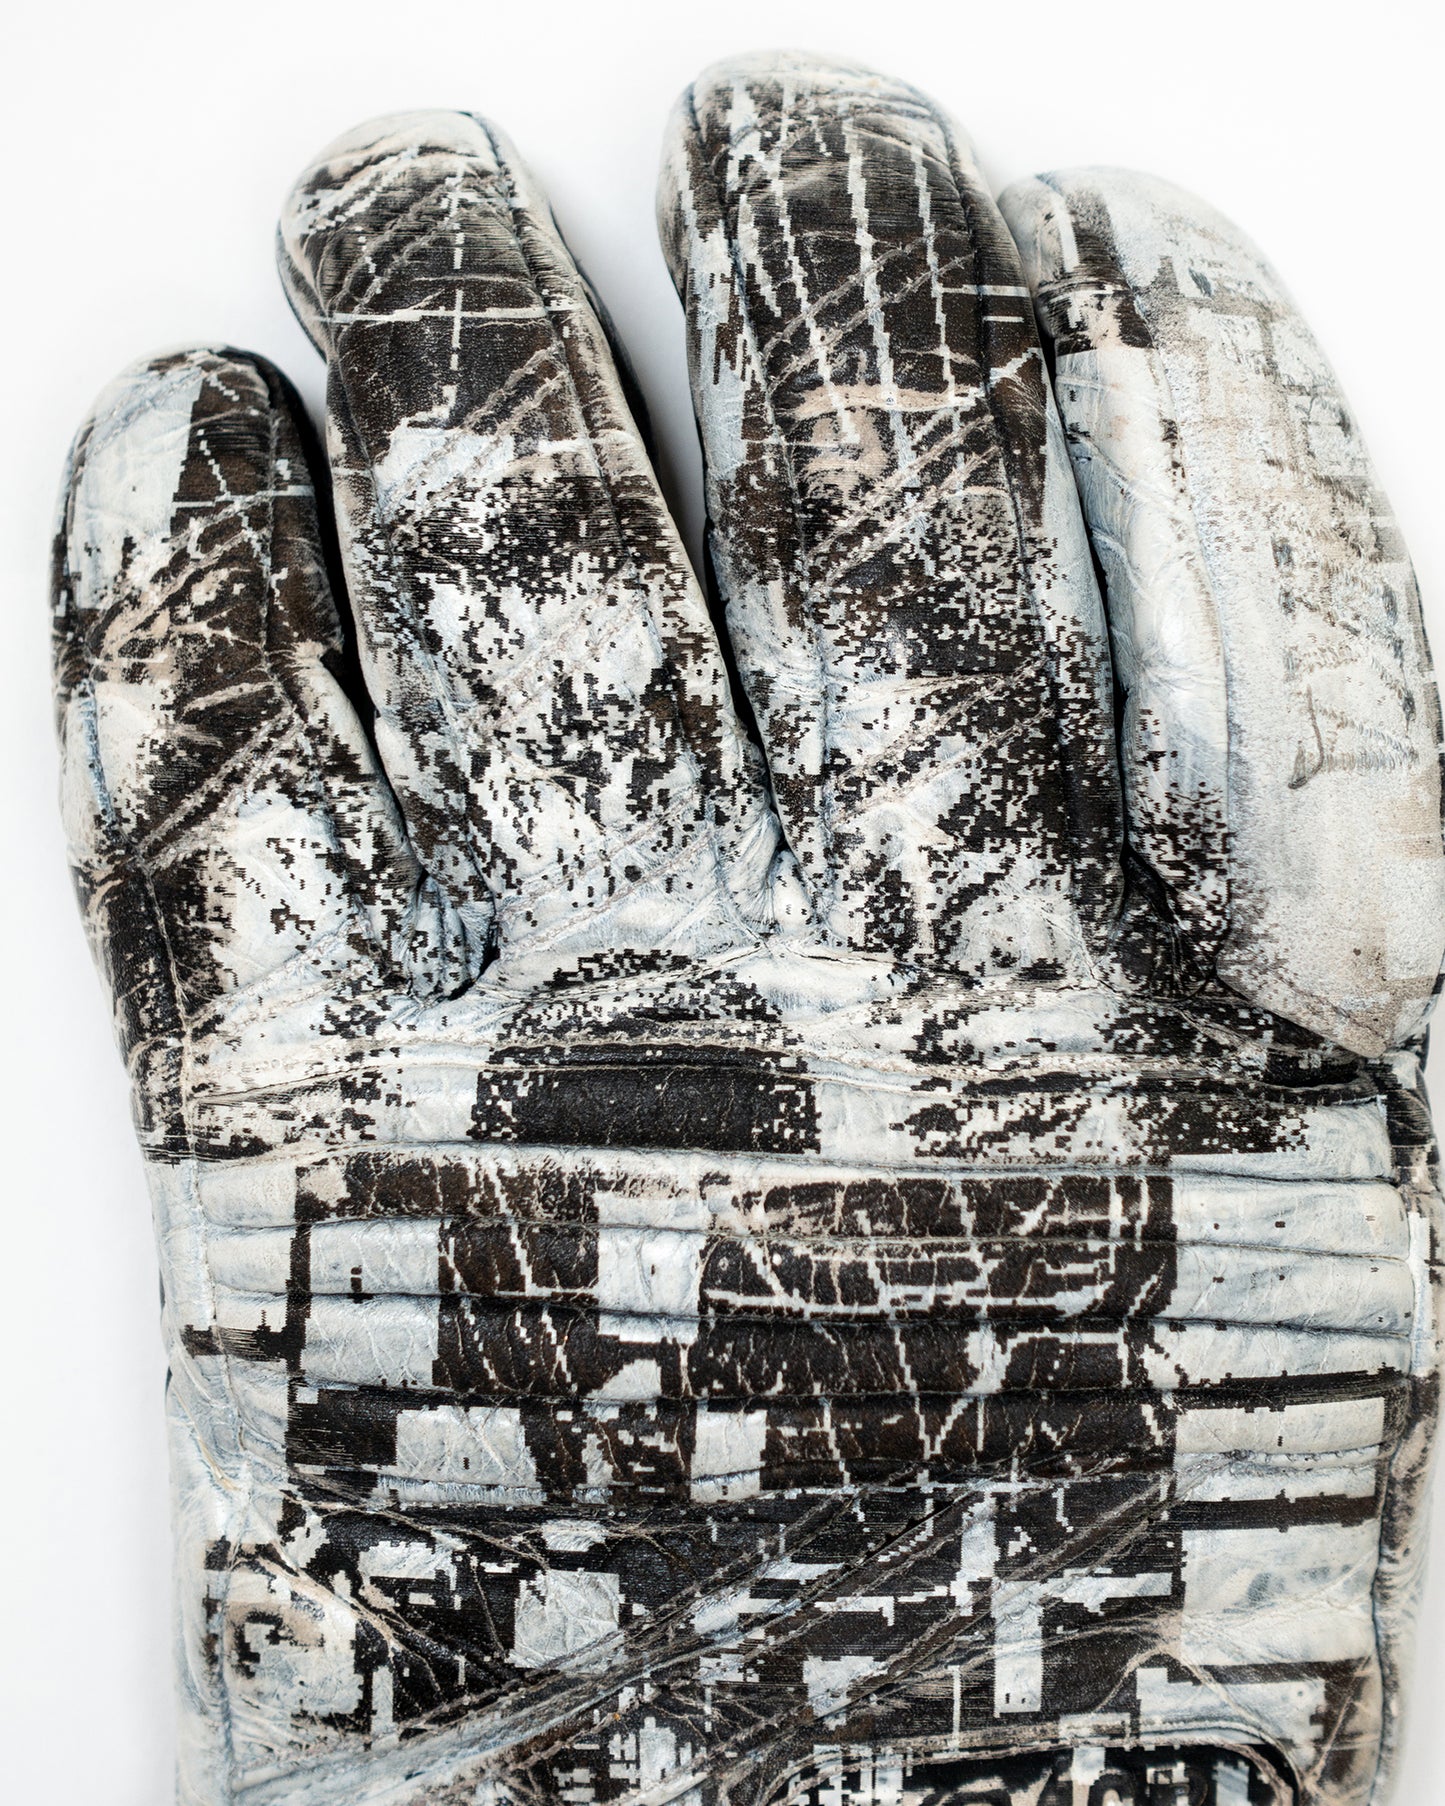 Laser Engraved Leather Gloves - L